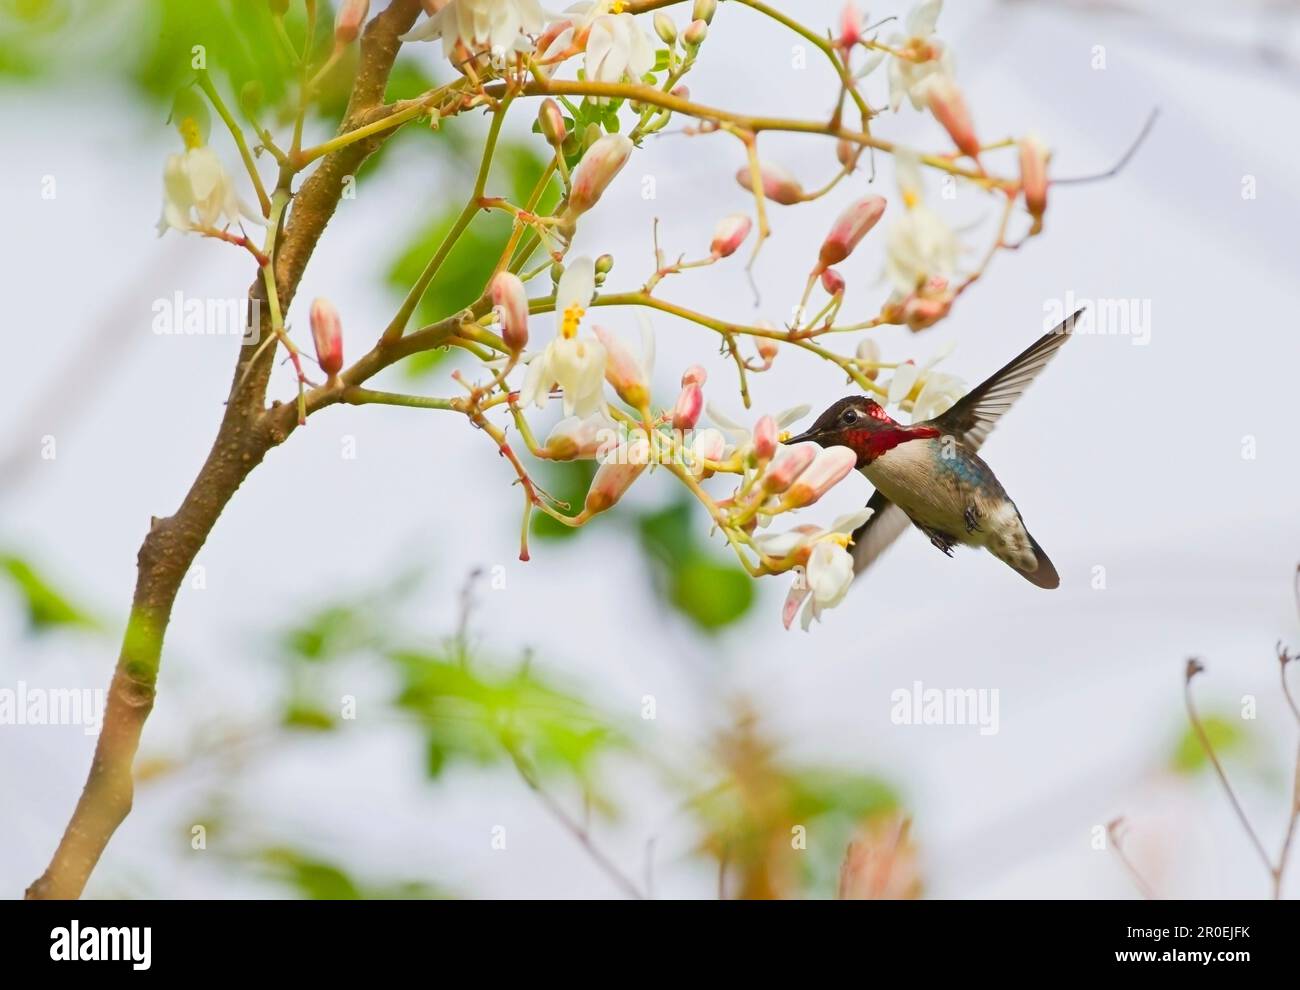 Colibrì d'ape (Melissuga helenae), maschio adulto, in volo, che si nuora e si nuora sul nettare dei fiori, il più piccolo uccello del mondo, la penisola di Zapata Foto Stock